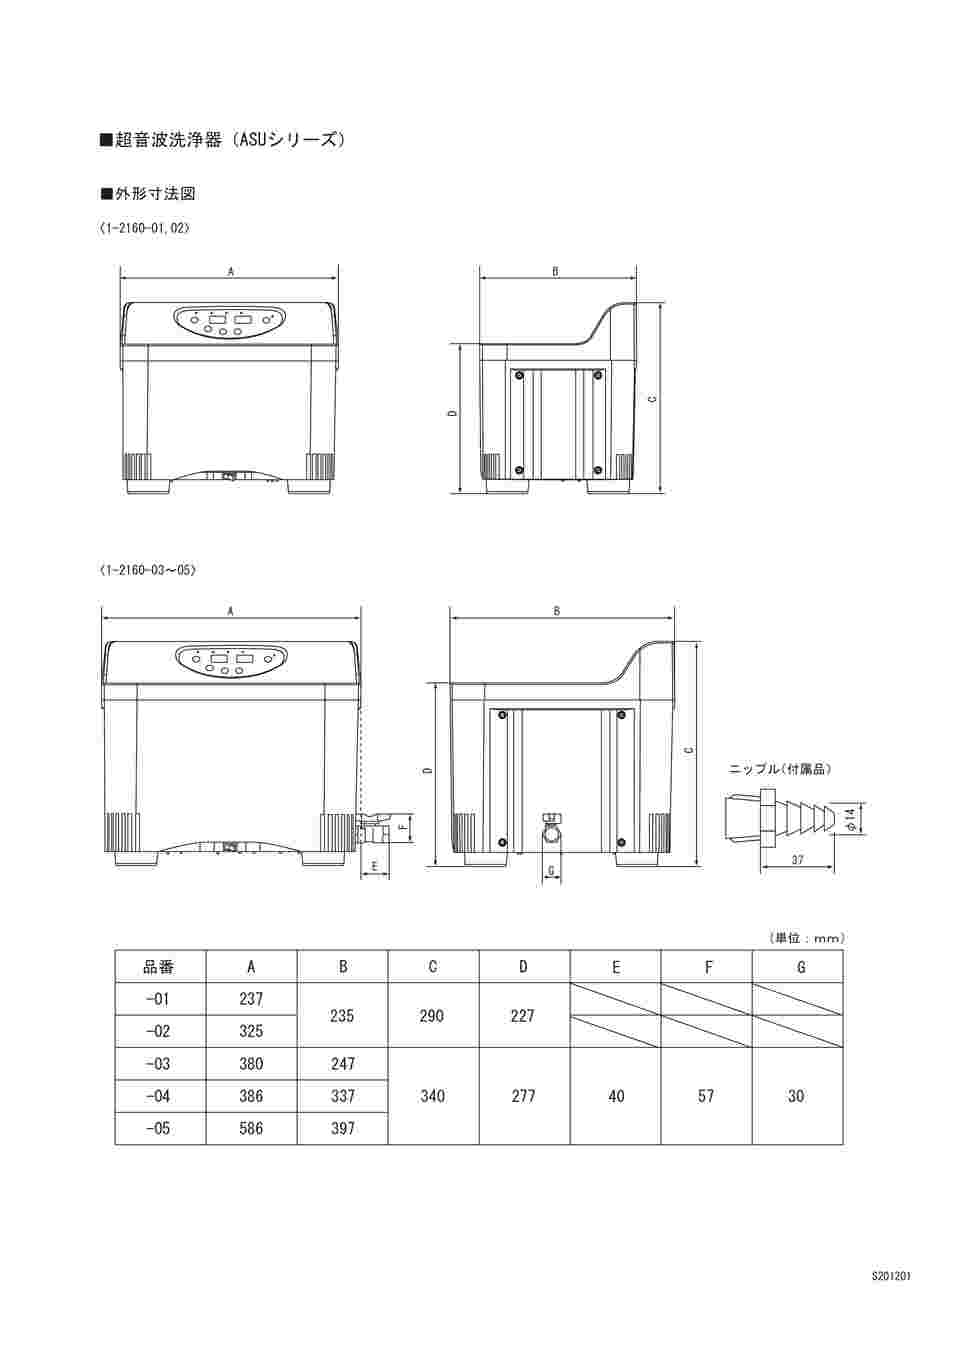 オリジナル 配管材料プロトキワAS 超音波洗浄器 ASU-6 1-2160-03 アズワン 株